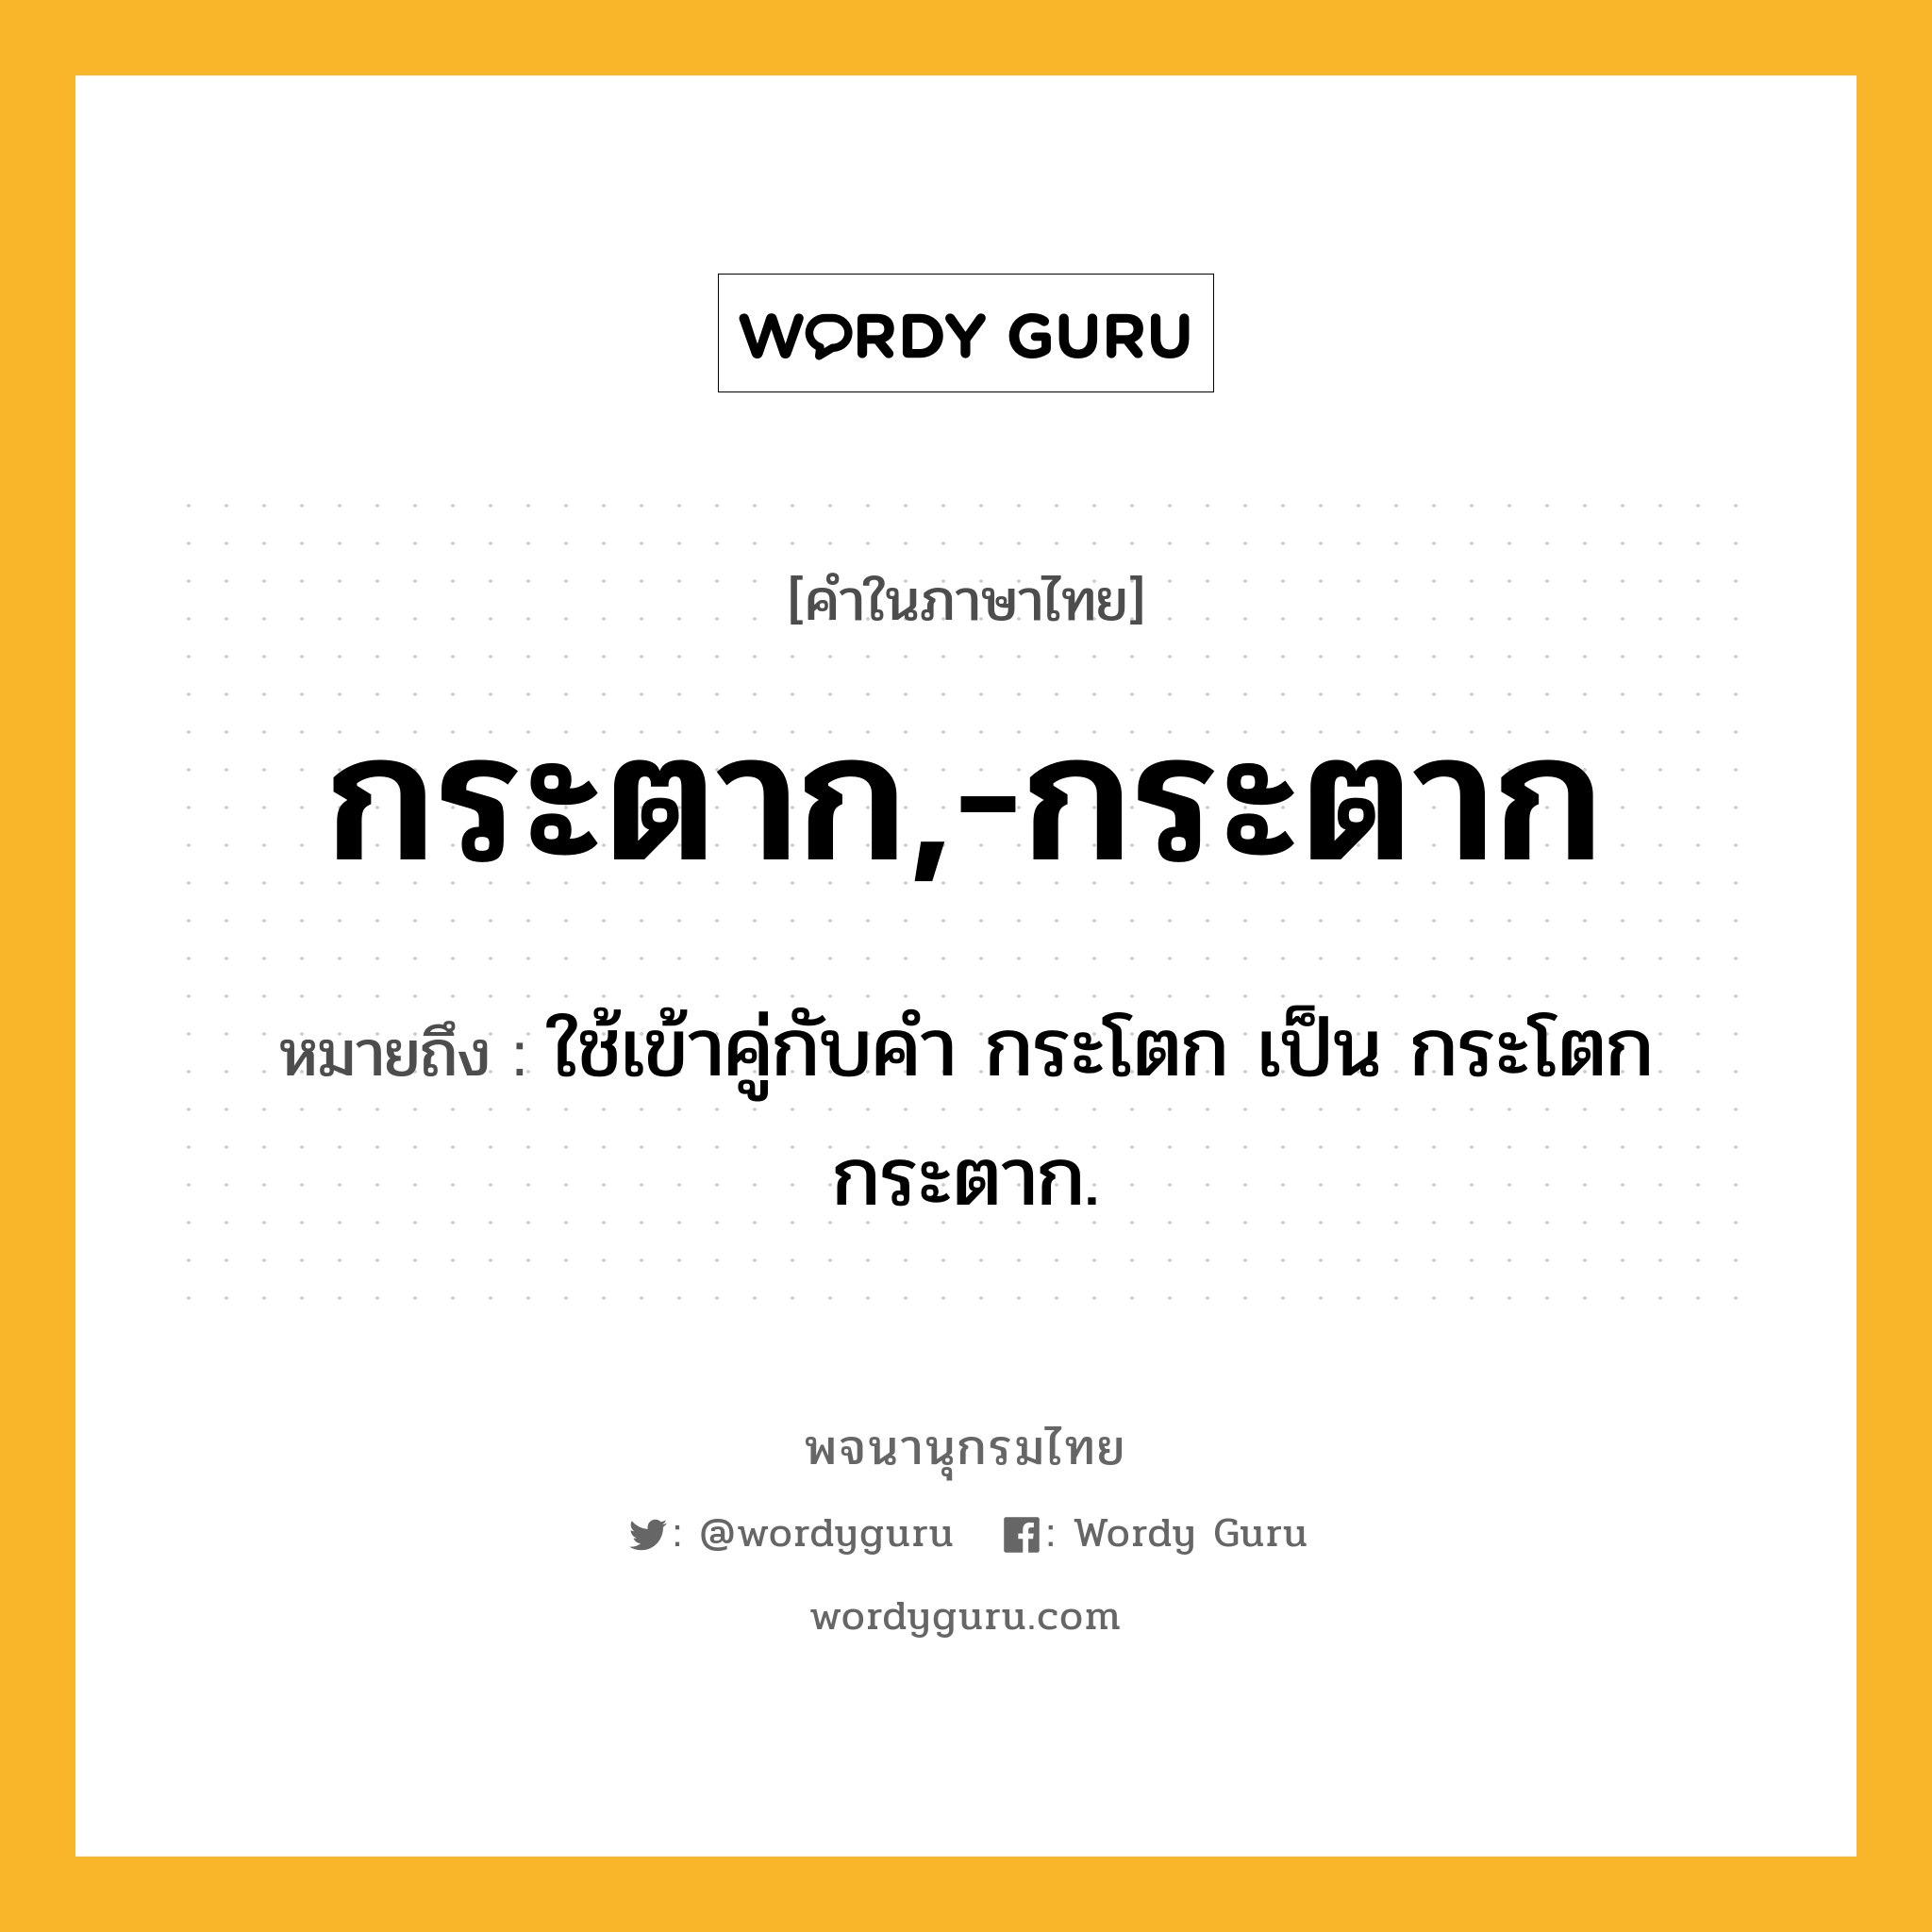 กระตาก,-กระตาก ความหมาย หมายถึงอะไร?, คำในภาษาไทย กระตาก,-กระตาก หมายถึง ใช้เข้าคู่กับคํา กระโตก เป็น กระโตกกระตาก.